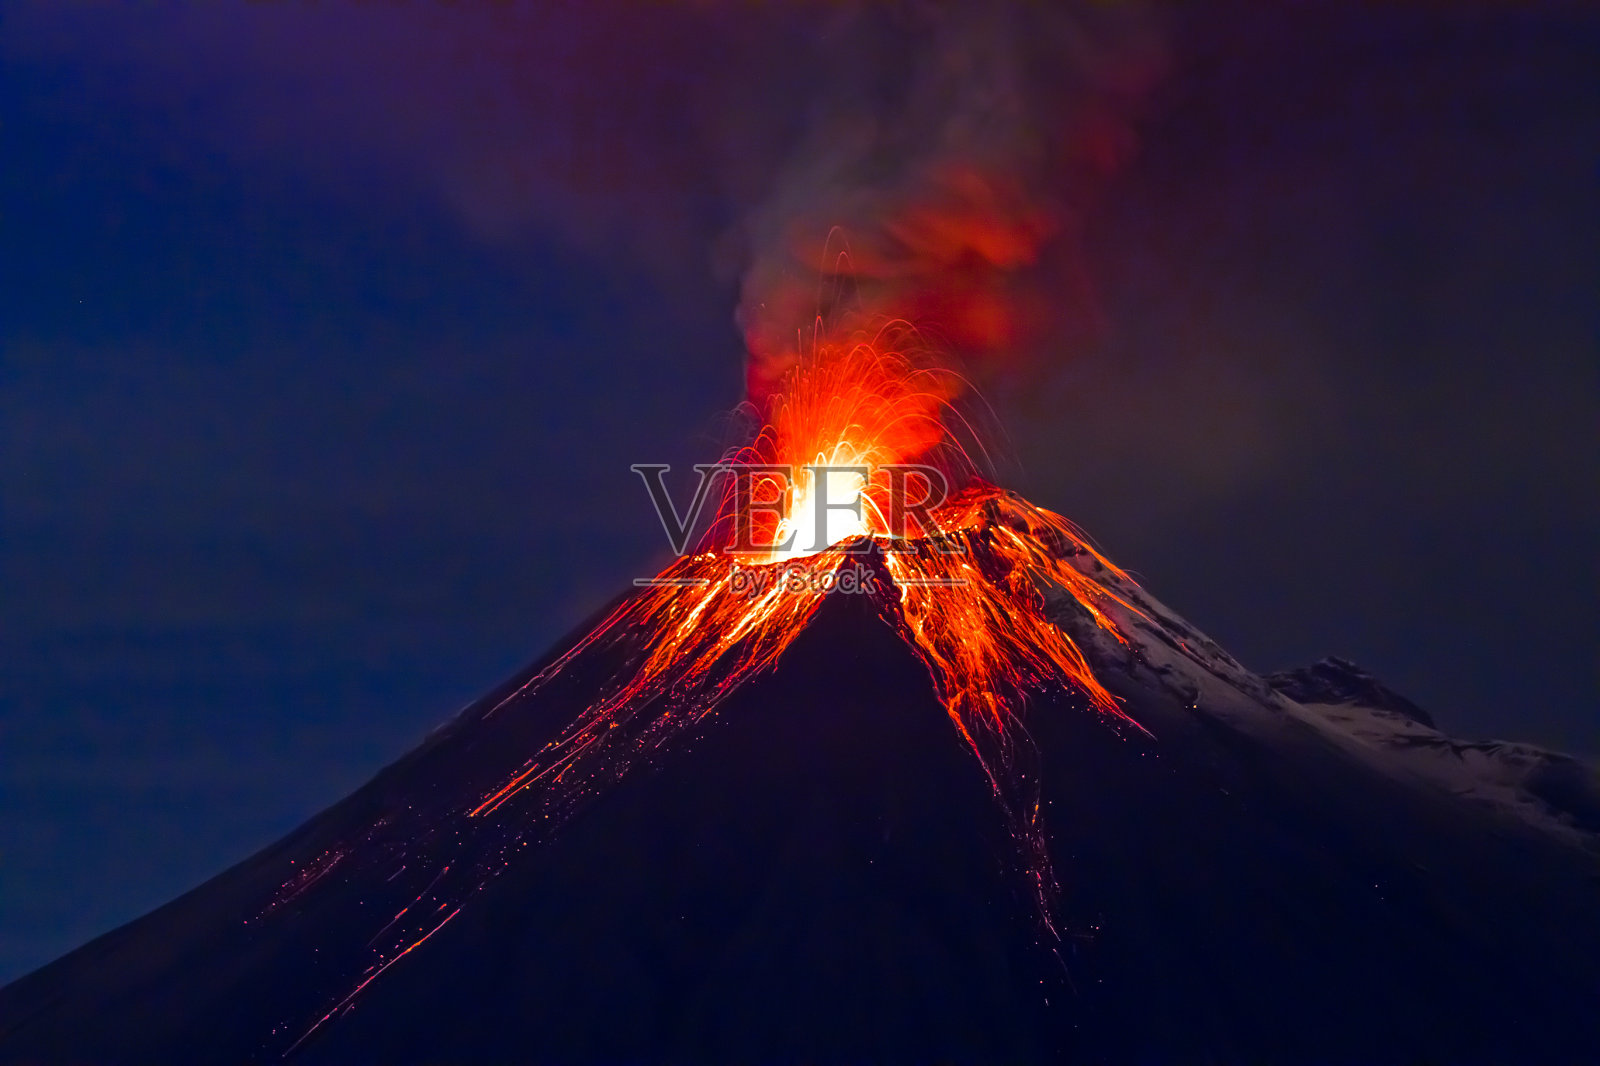 长时间暴露在蓝天下的通古拉瓦火山照片摄影图片